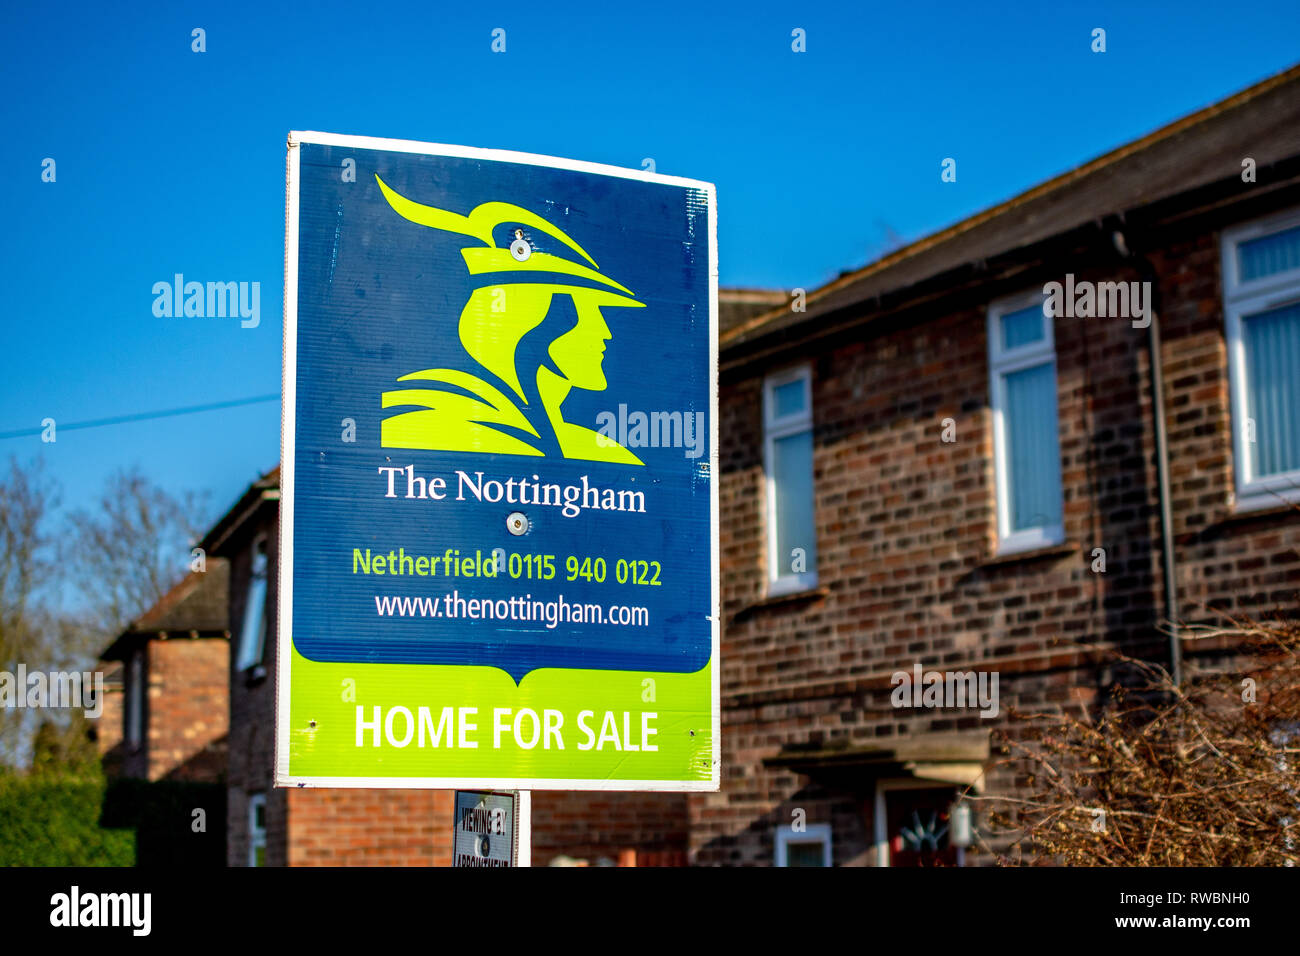 Nottingham, Angleterre, Royaume-Uni - 23/03/2019 agents immobiliers : Le panneau indiquant Nottingham la disponibilité d'un bien immobilier à vendre. Bleu et vert. Banque D'Images